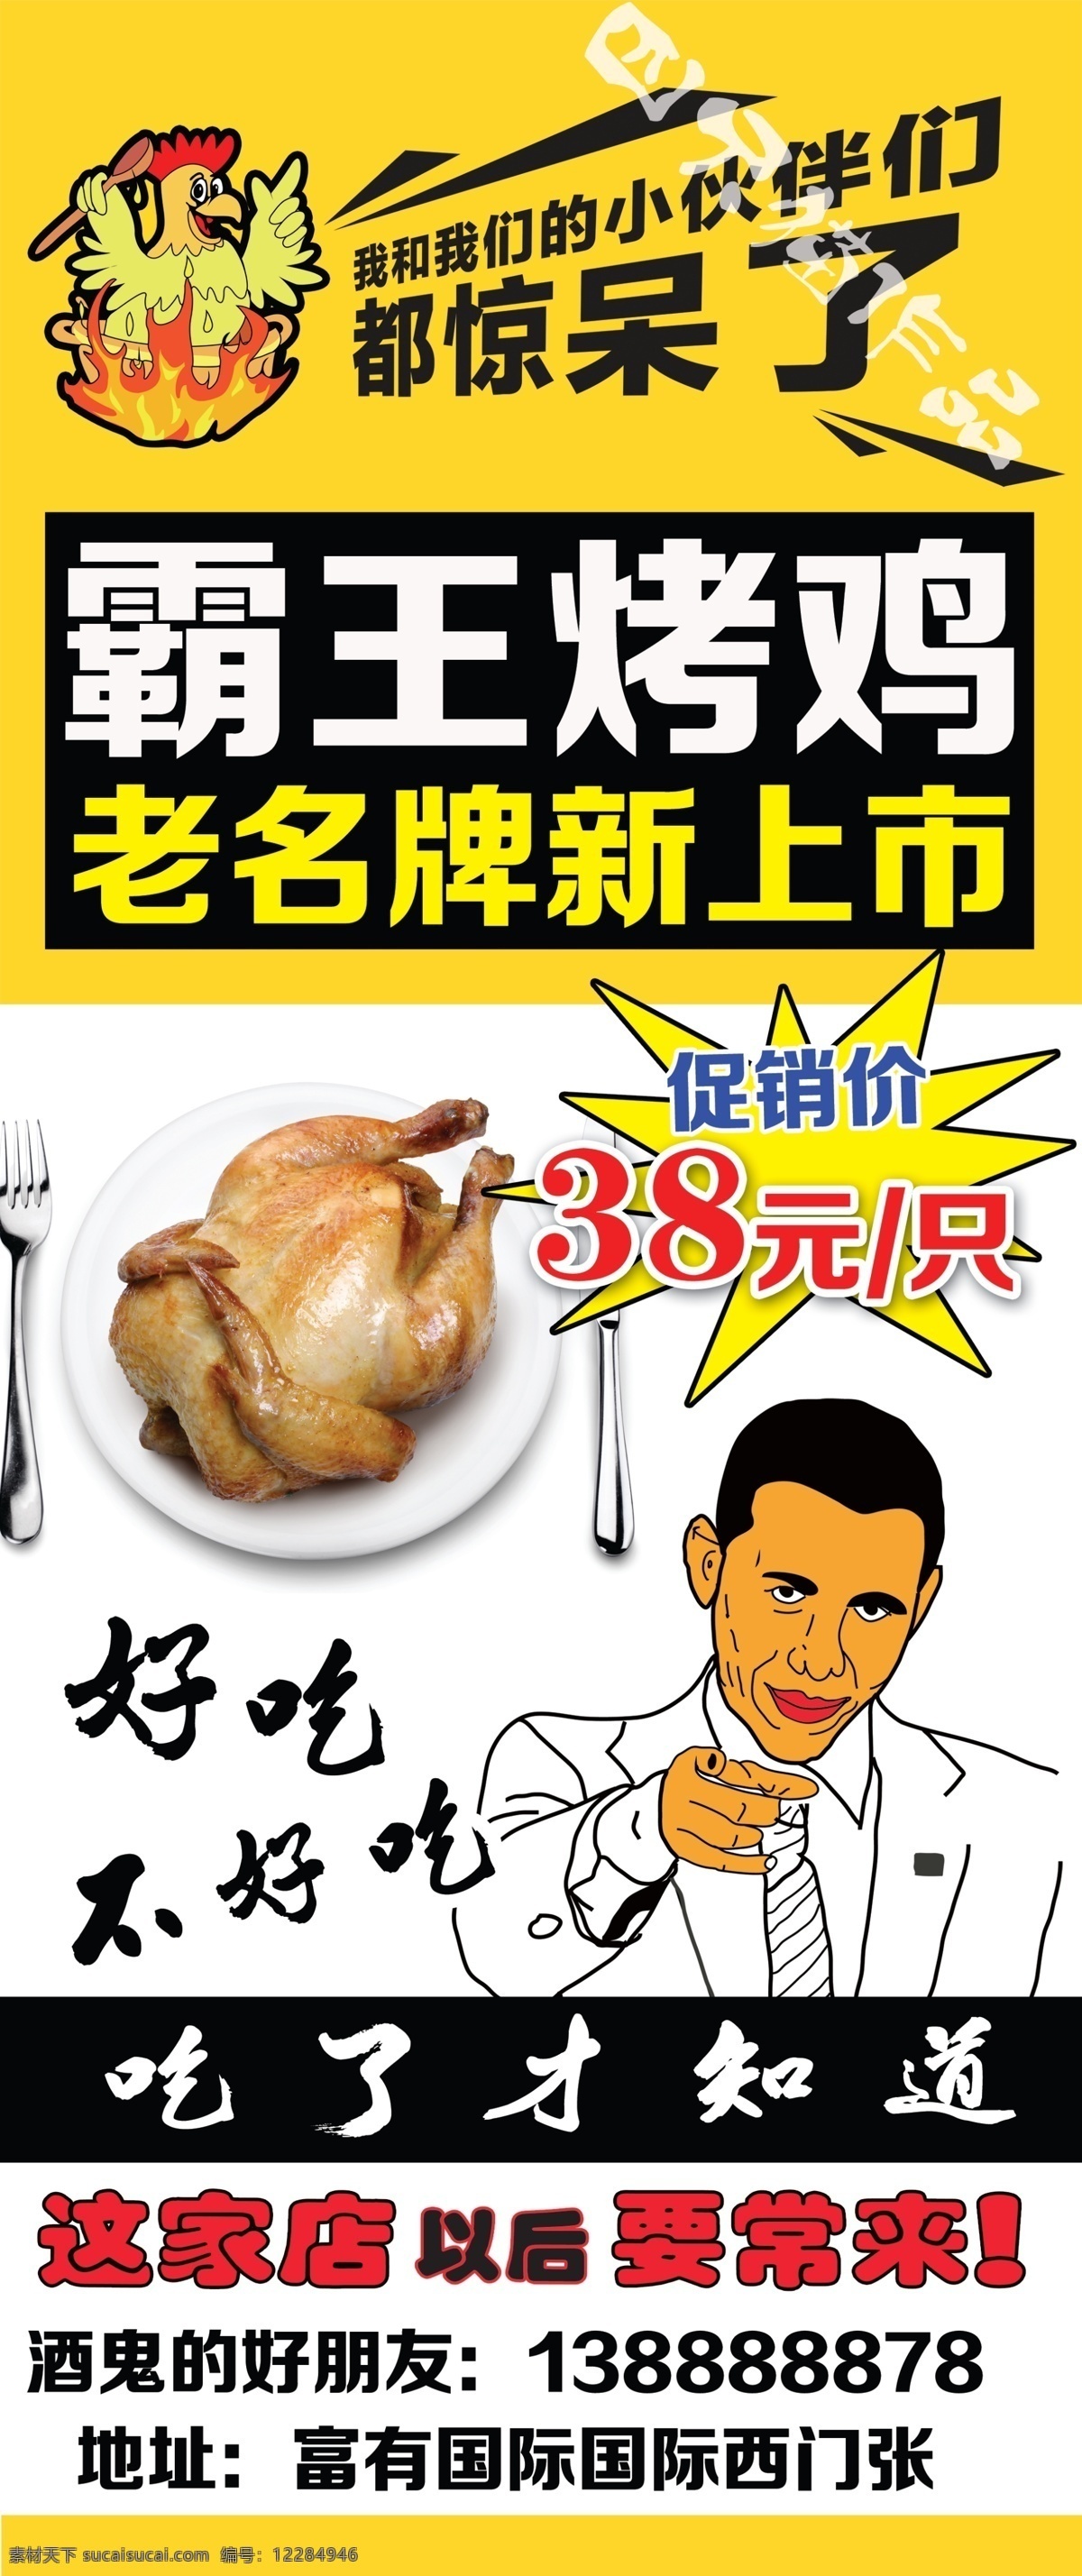 霸王烤鸡 烤鸡 创意 奥巴马 餐饮 小伙伴惊呆了 海报 好吃 母鸡 烧鸡 白色